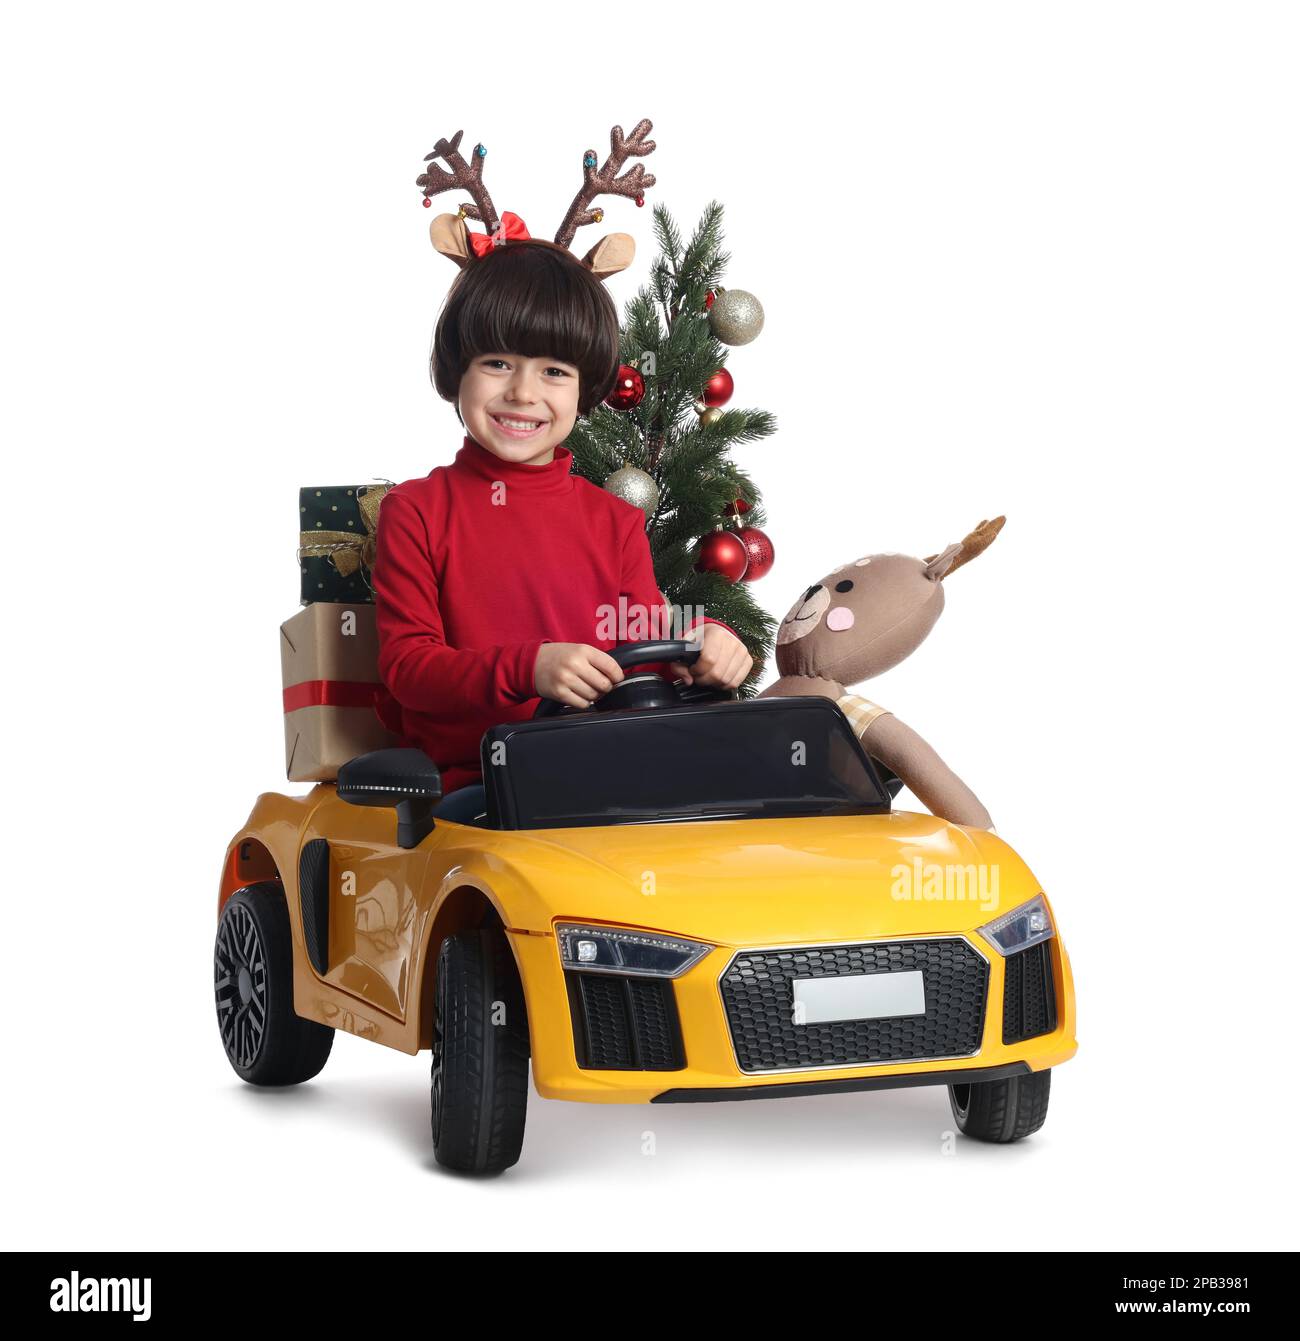 Carino bambino con albero di Natale, giocattolo cervi e scatole regalo che guidano l'auto dei bambini su sfondo bianco Foto Stock